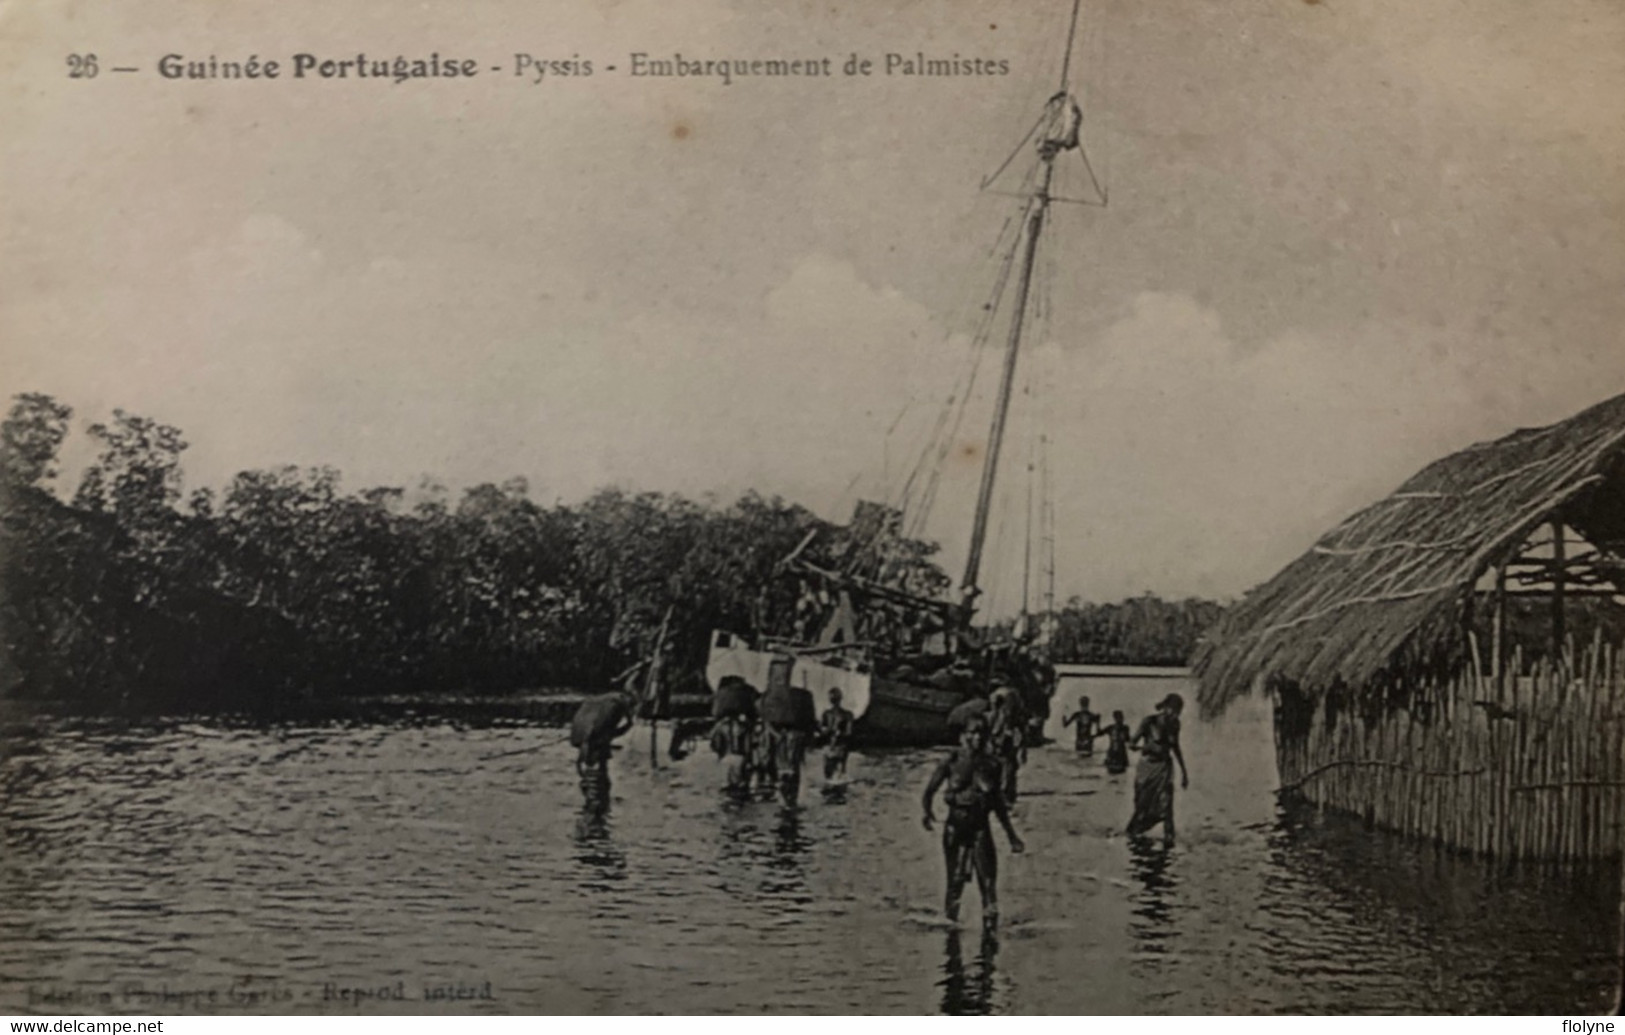 Guinée Portugaise - Pyssis - Embarquement Des Palmistes - Ethnic Ethno Femmes Seins Nus Nue Nude - Guinéa Bissau - Guinea-Bissau